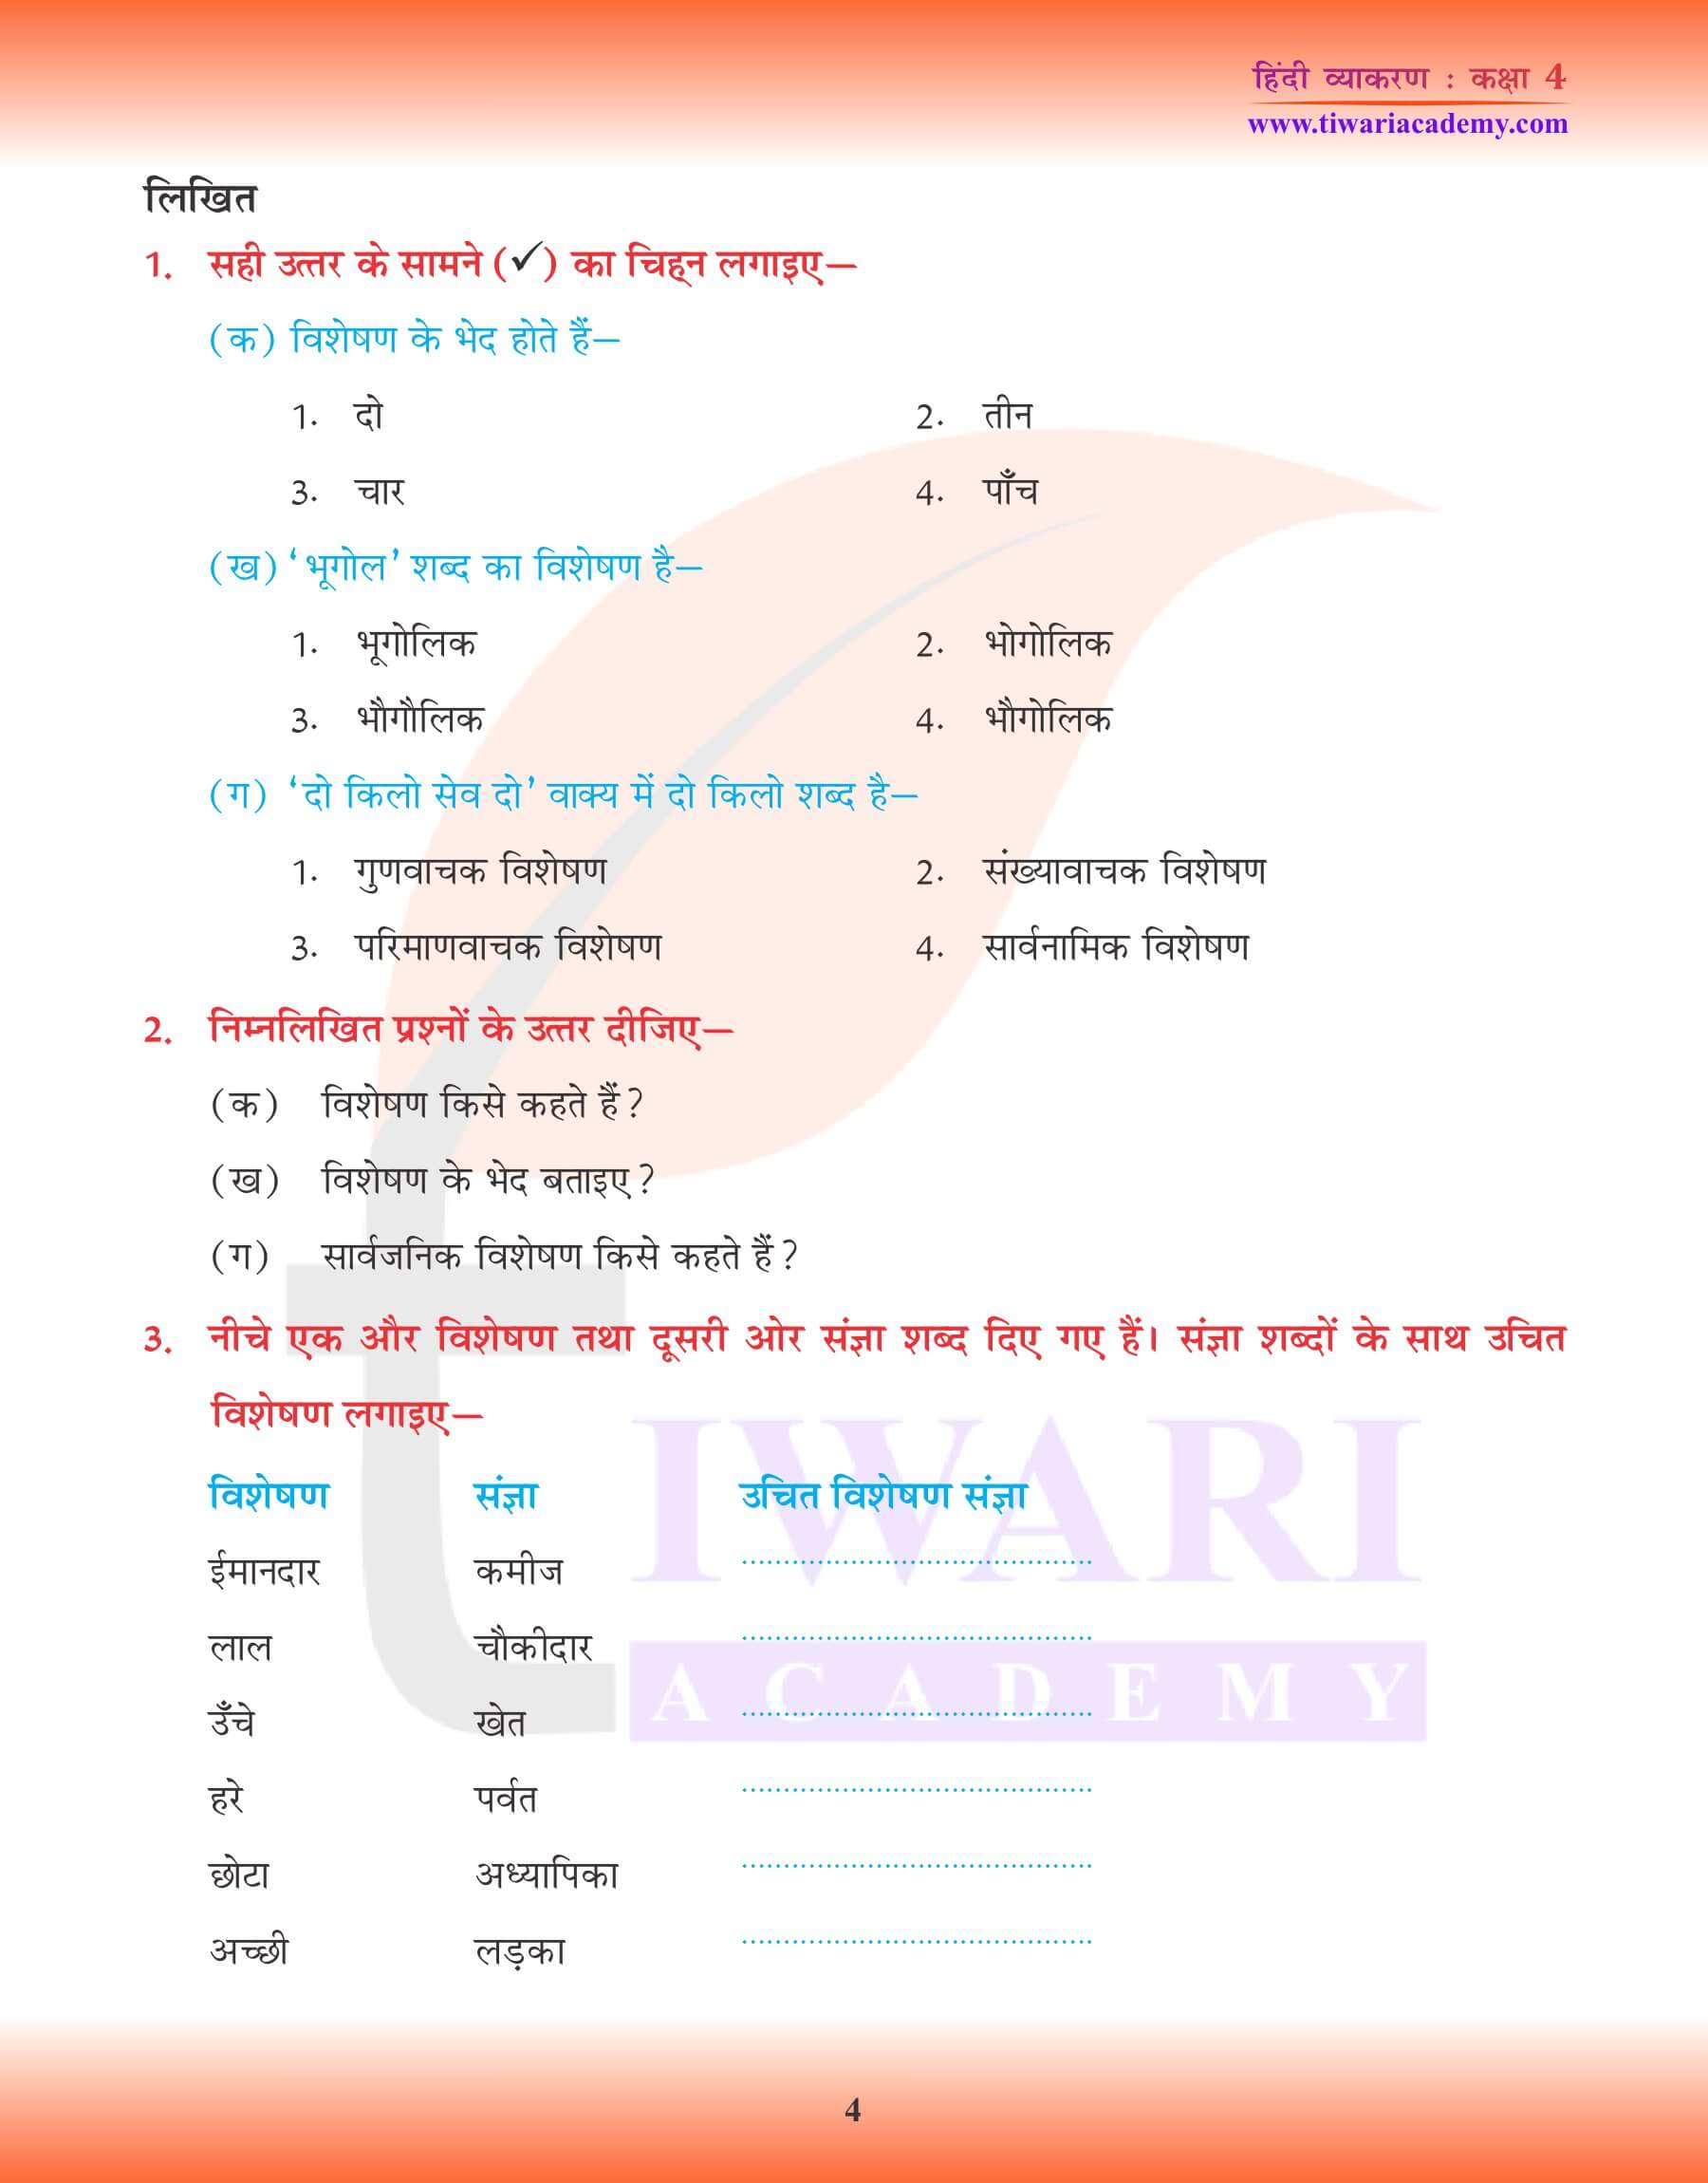 कक्षा 4 हिंदी व्याकरण में विशेषण के उदाहरण